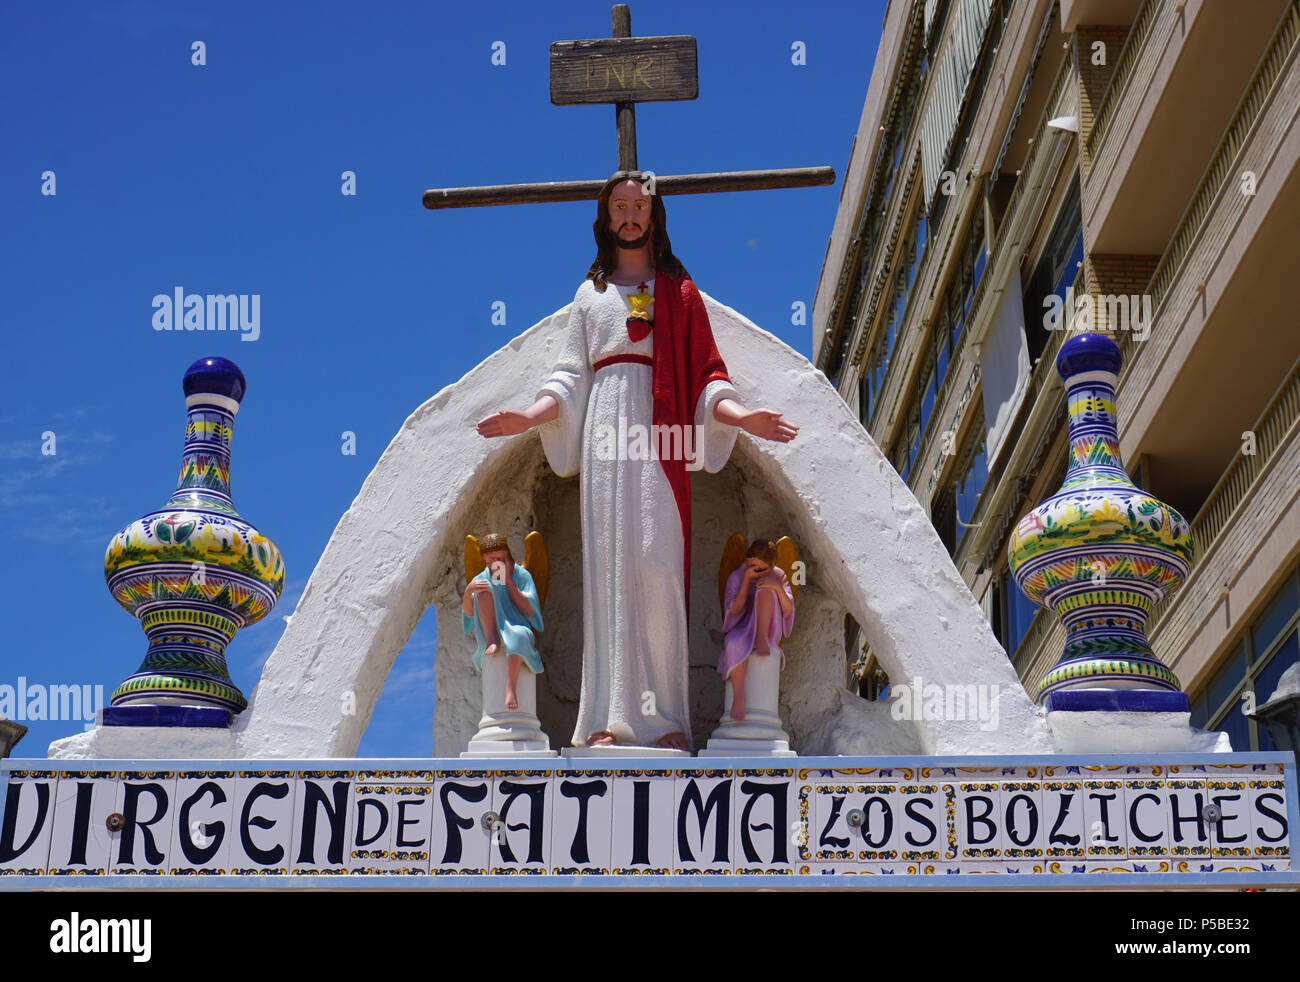 Virgen de fatima fotografías e imágenes de alta resolución - Alamy